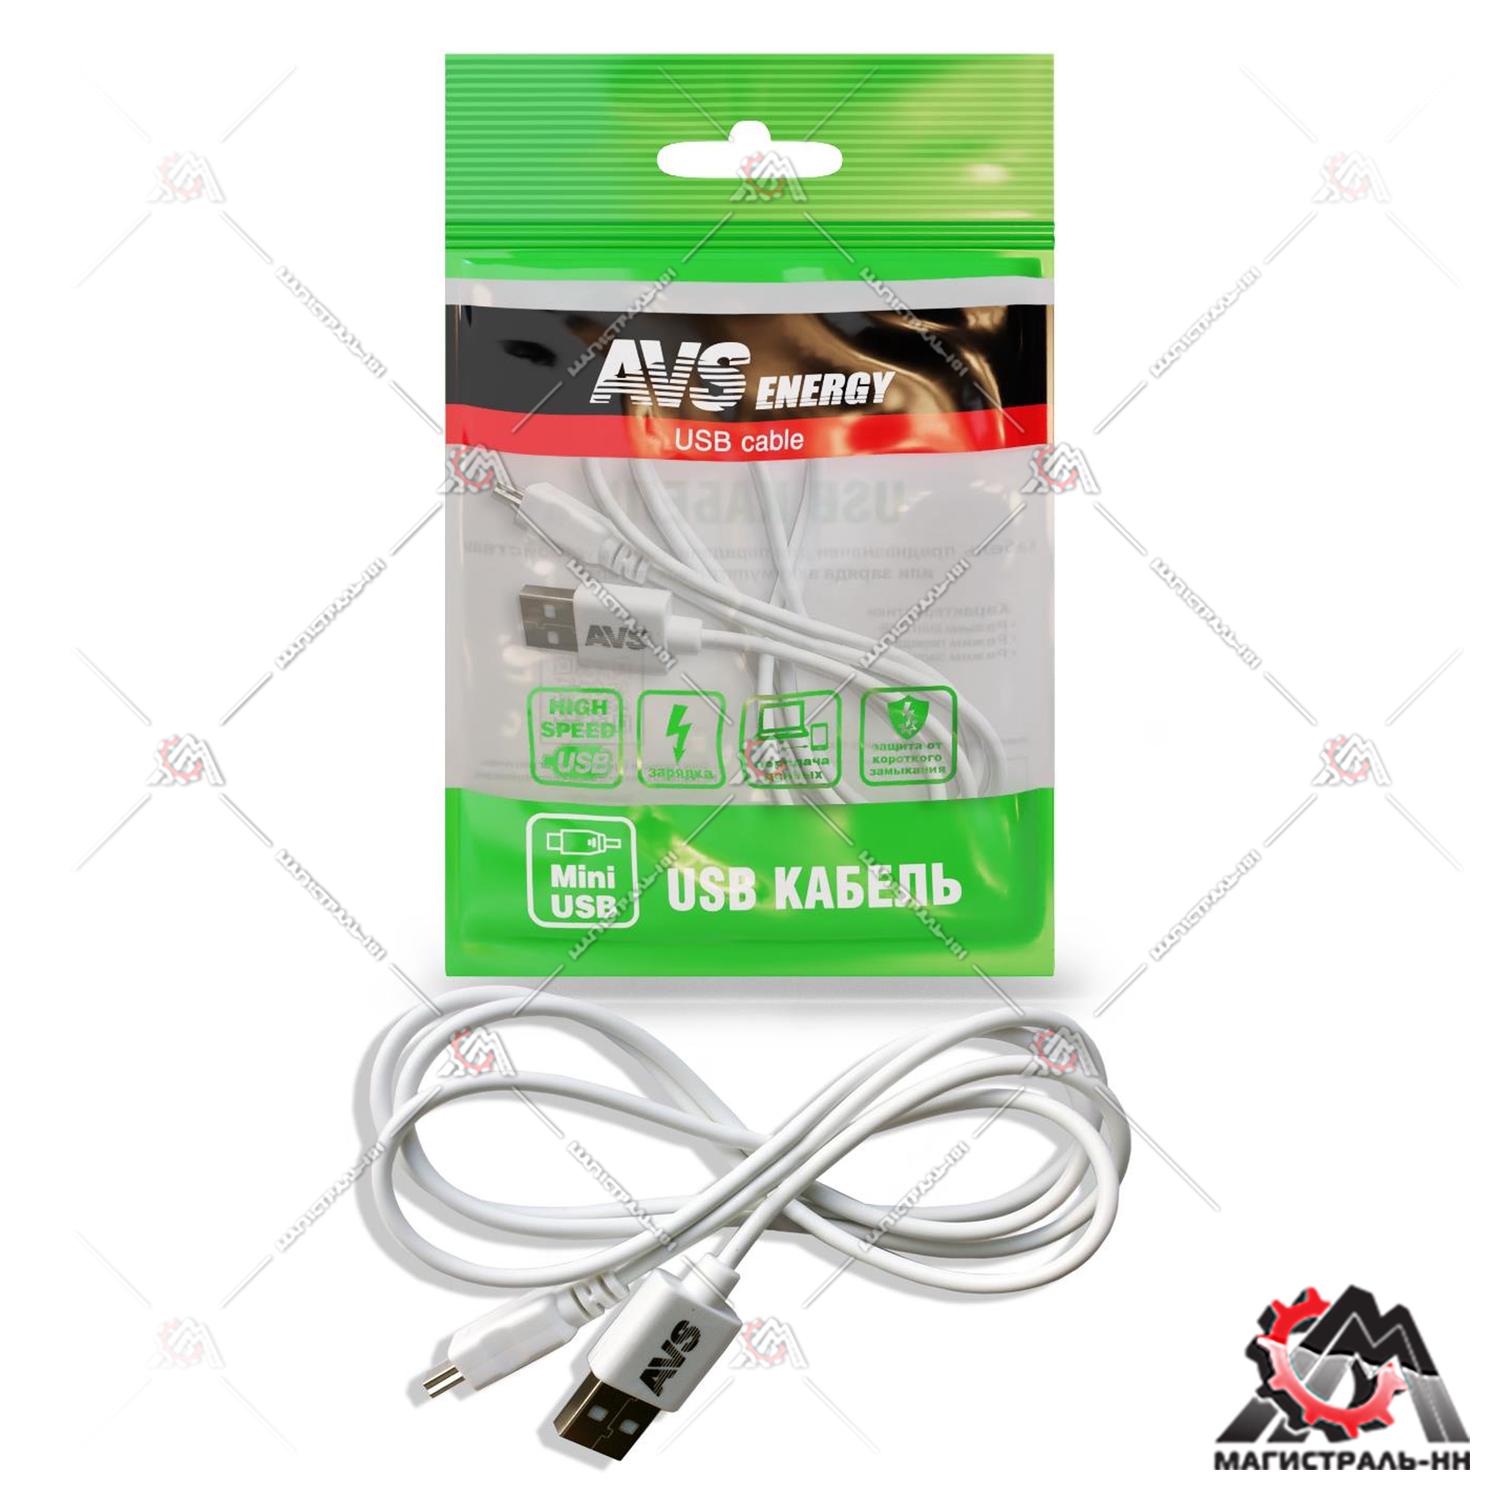 Кабель mini USB (1м) MN-313 AVS